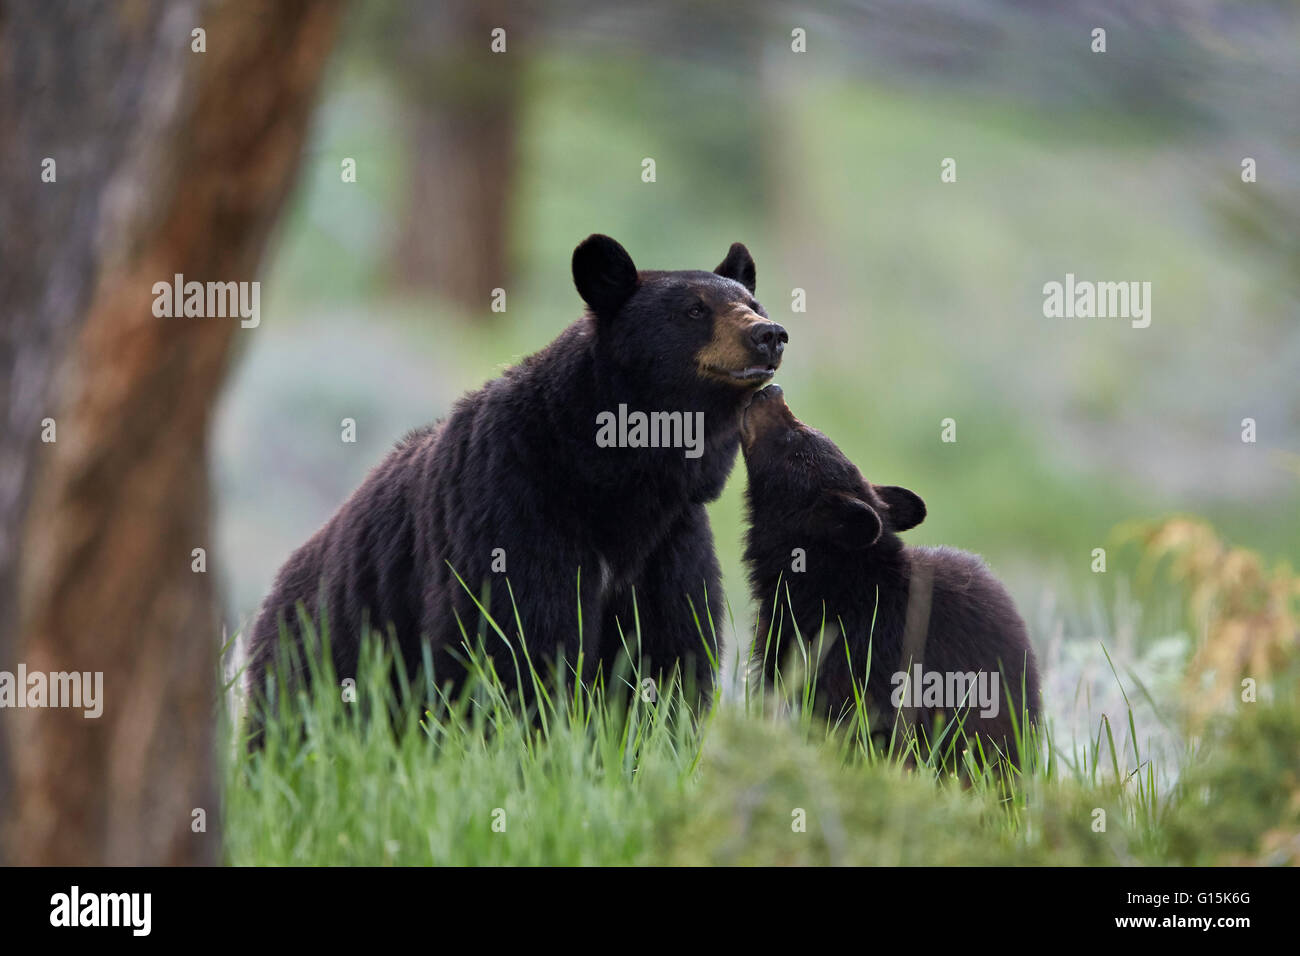 L'ours noir (Ursus americanus), cahier des charges et les CUB, le Parc National de Yellowstone, Wyoming, États-Unis d'Amérique, Amérique du Nord Banque D'Images